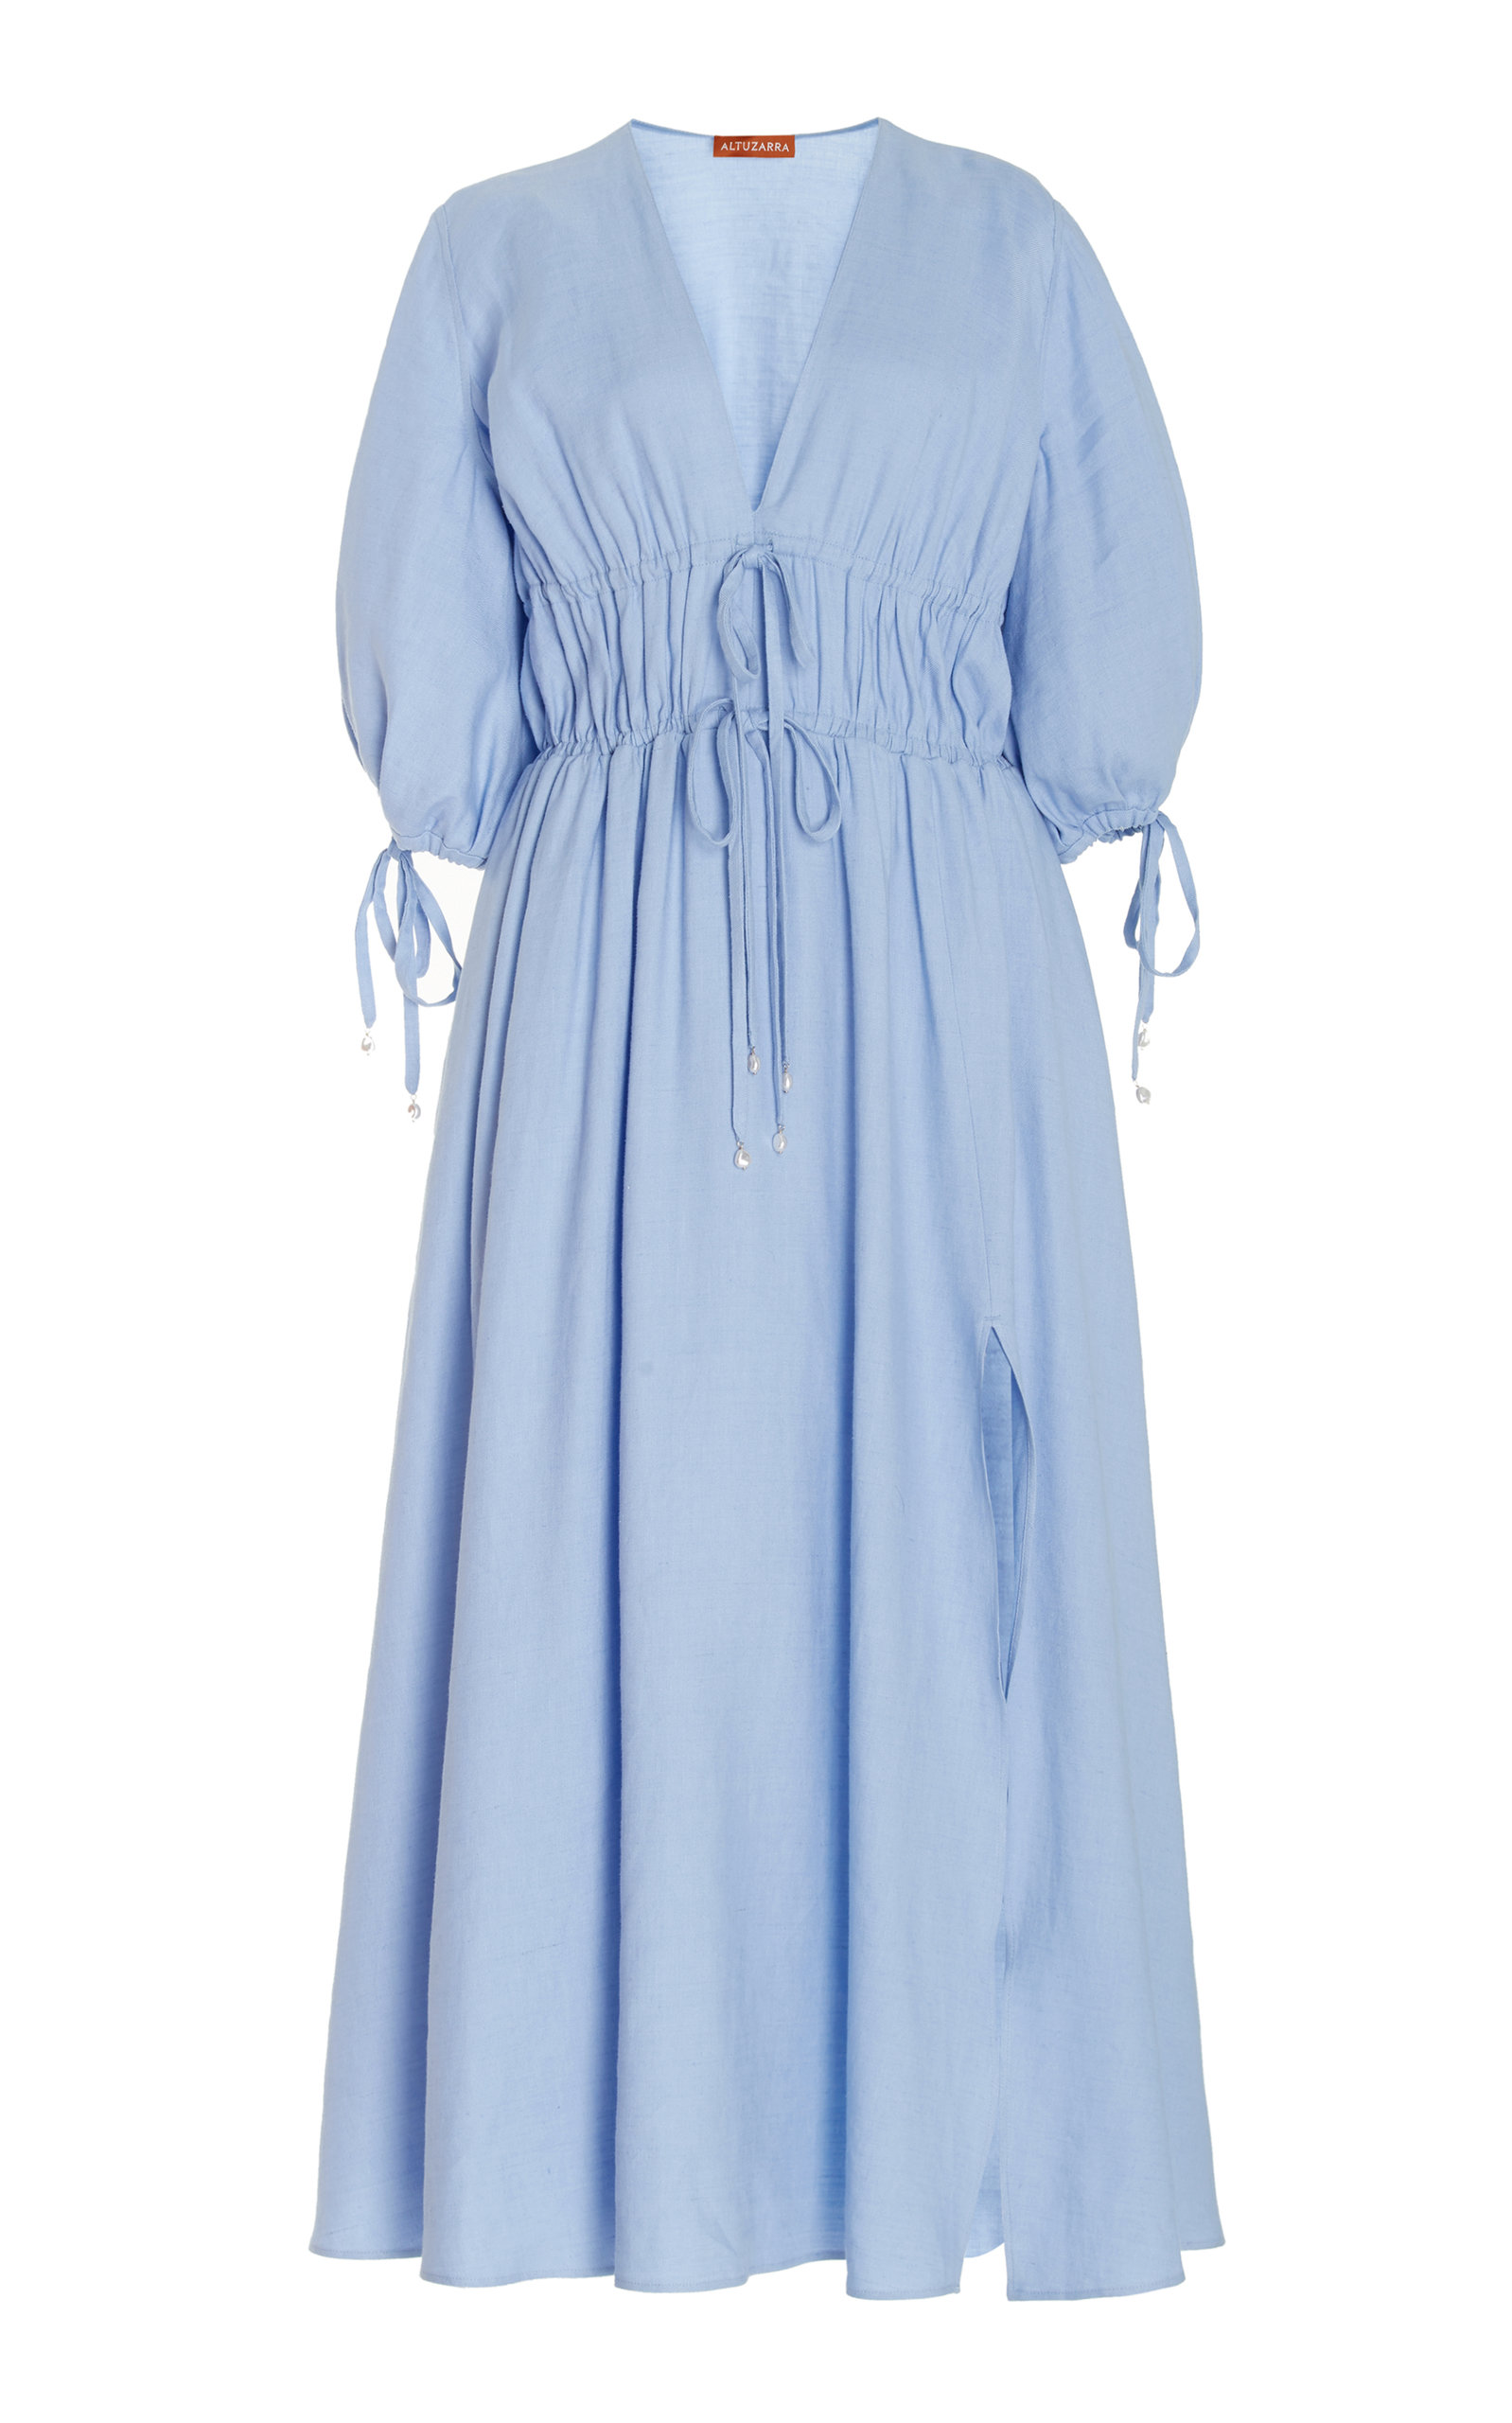 Altuzarra - Women's Donrine Linen-Blend Dress - Blue - FR 34 - Moda Operandi